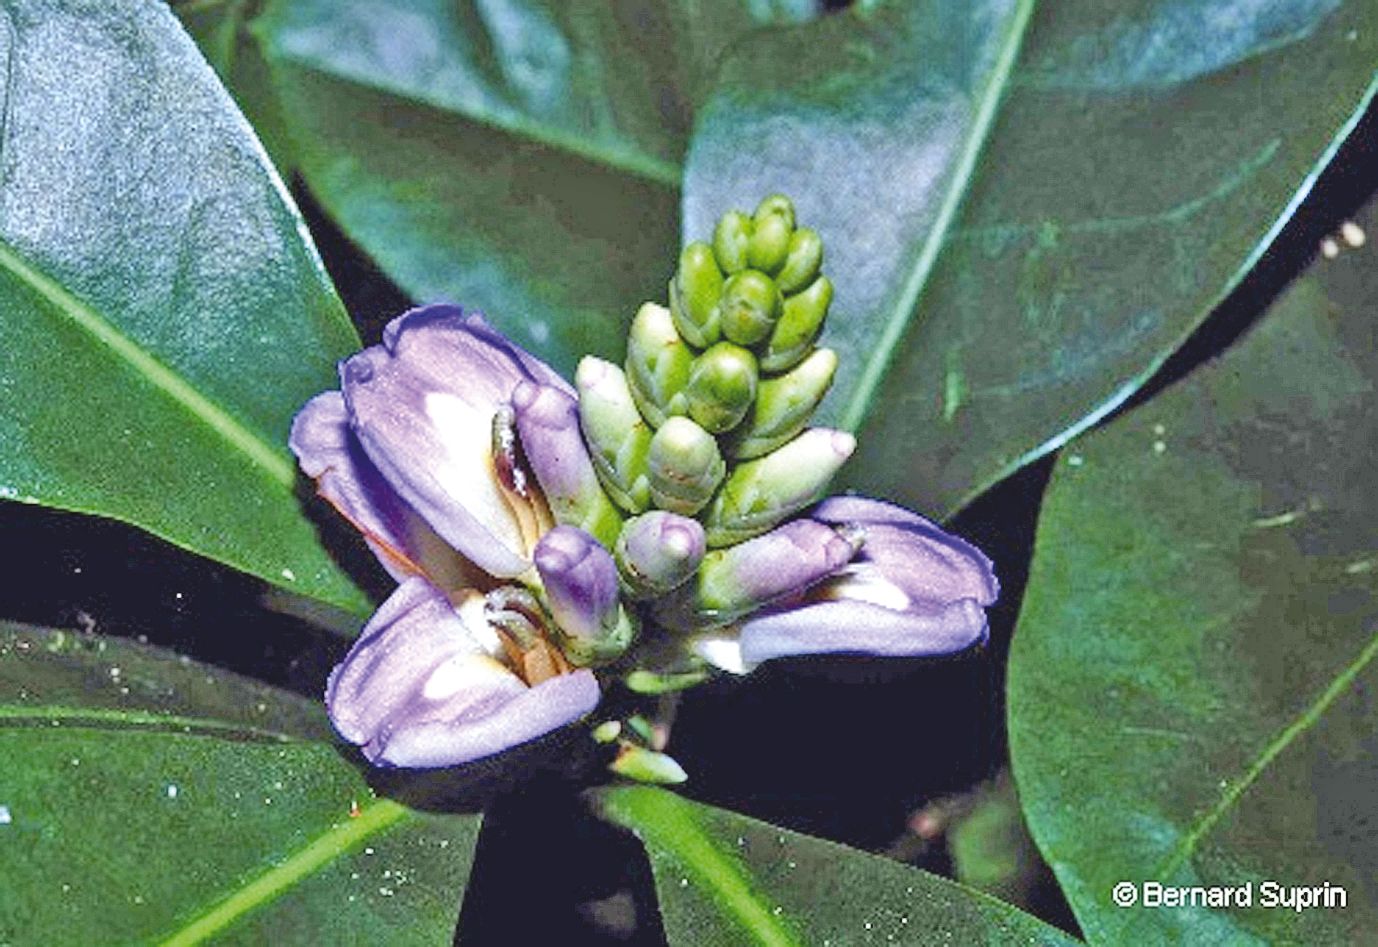 L’acanthus ilicifolius est utilisée au Vanuatu pour soigner certaines diarrhées de l’enfant allaité. Le jus des feuilles est donné à boire soit à l’enfant, soit à la mère qui allaite.